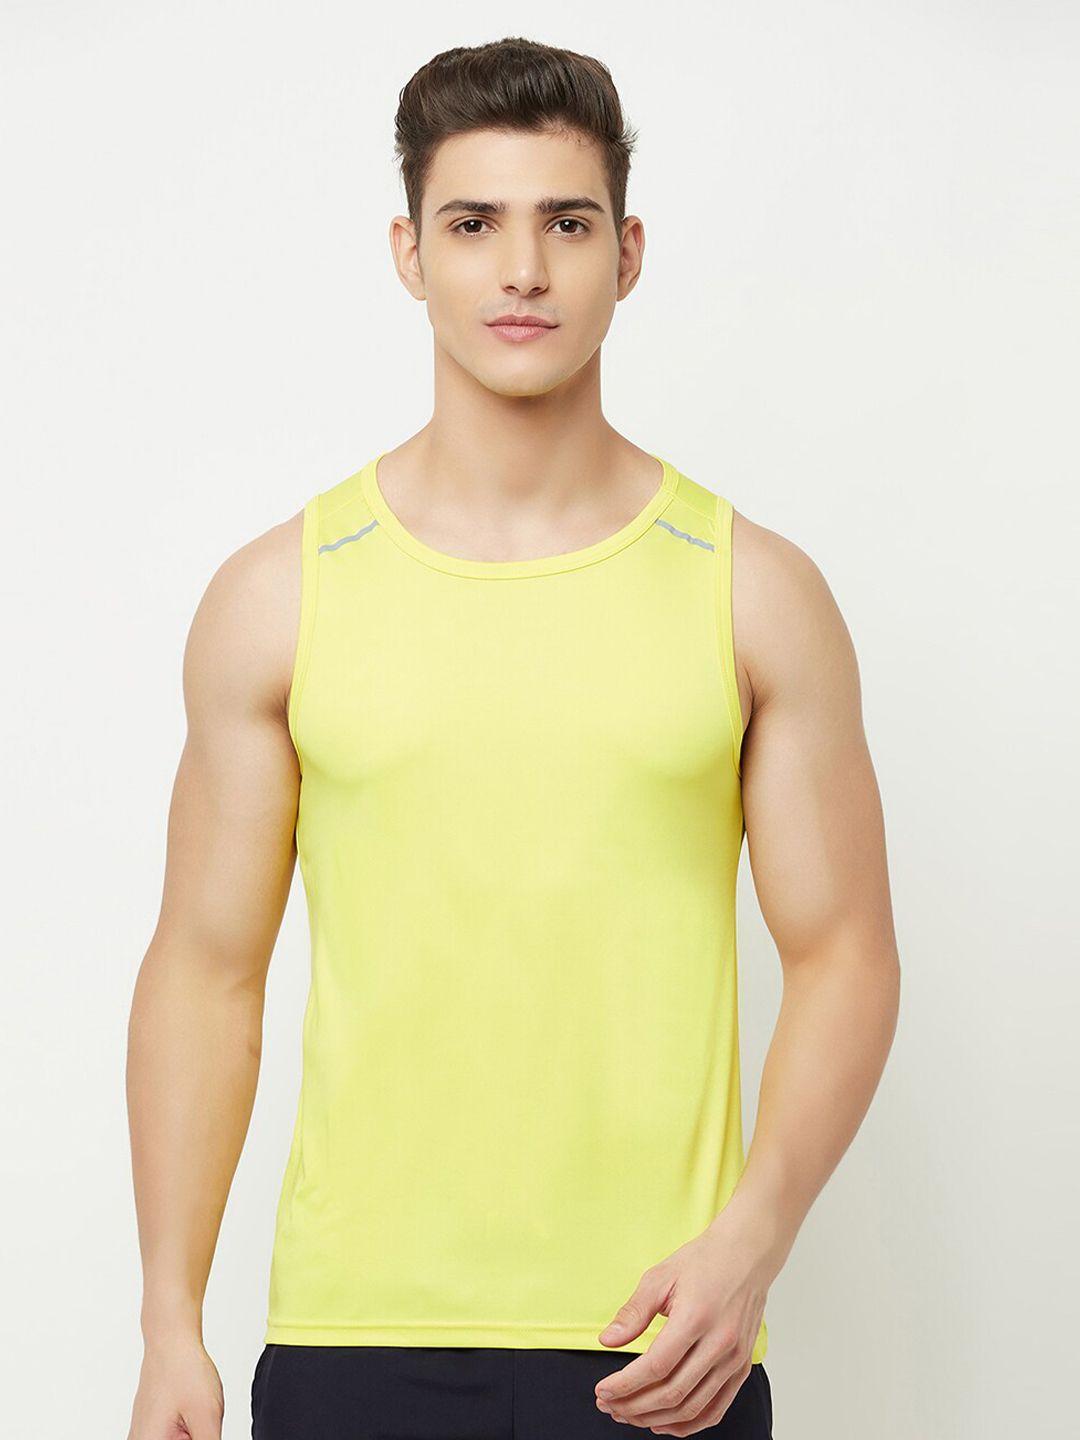 truerevo men yellow sleeveless t-shirt